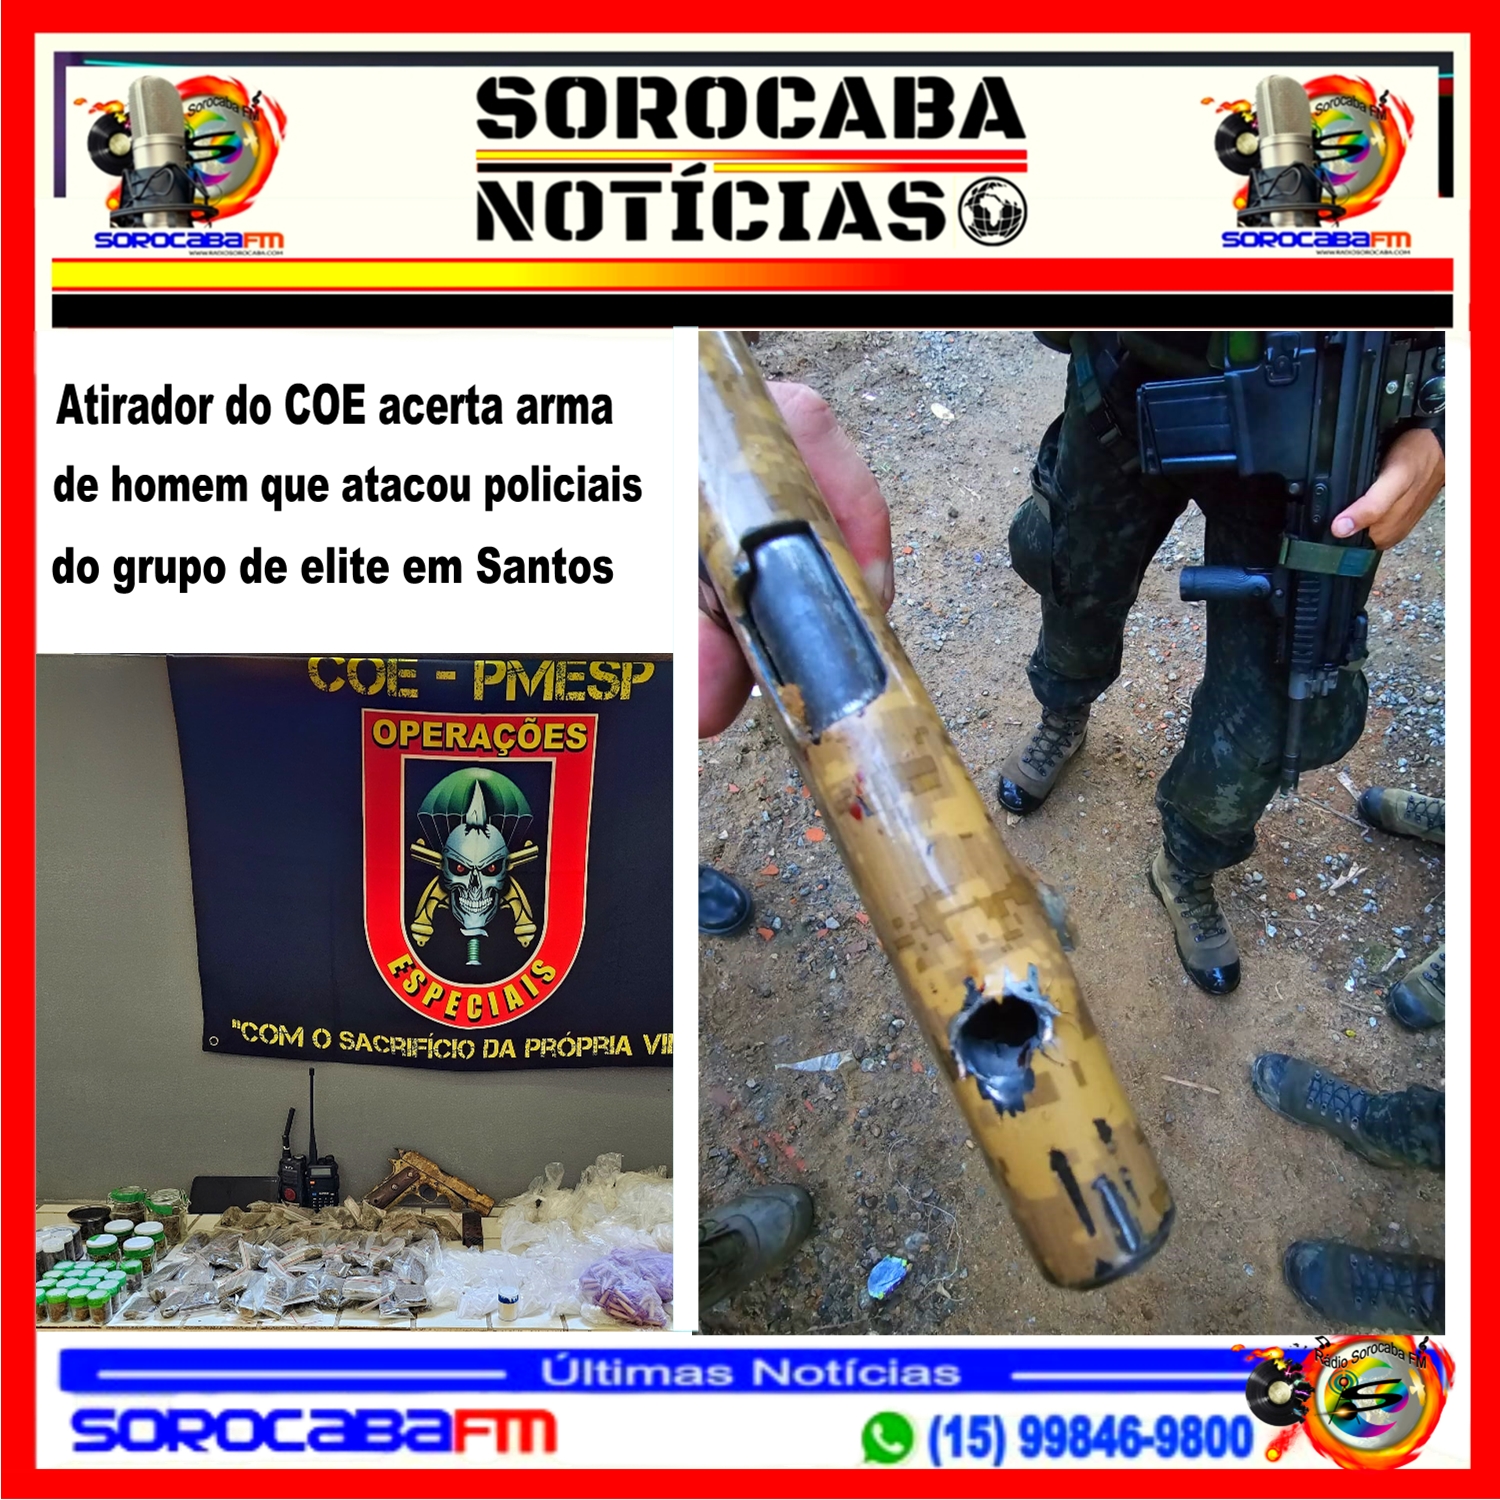 Atirador do COE acerta arma de homem que atacou policiais do grupo de elite em Santos